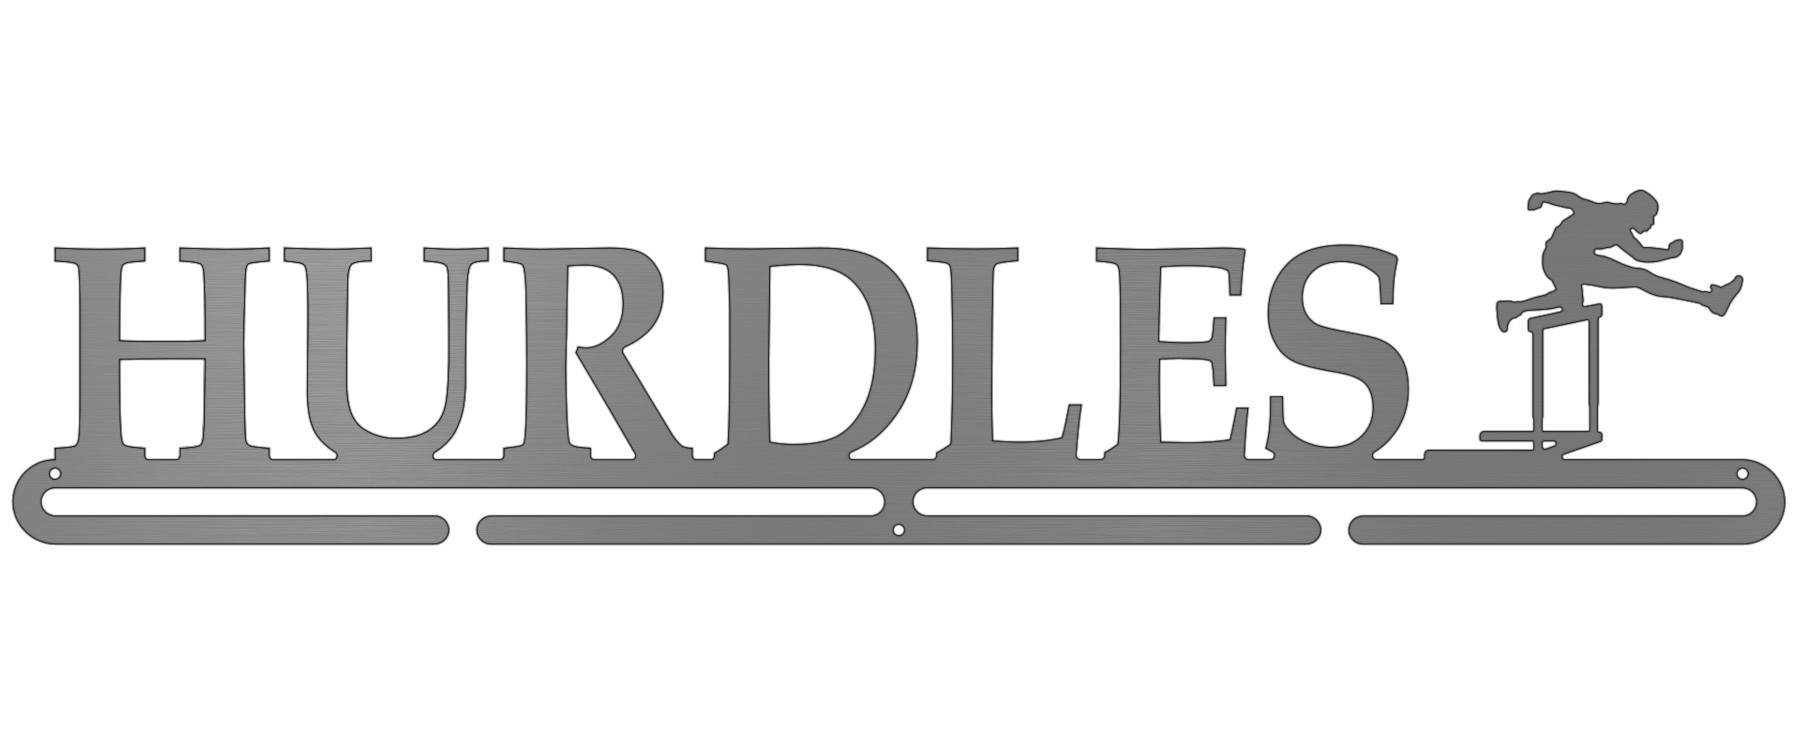 Hurdles - Male